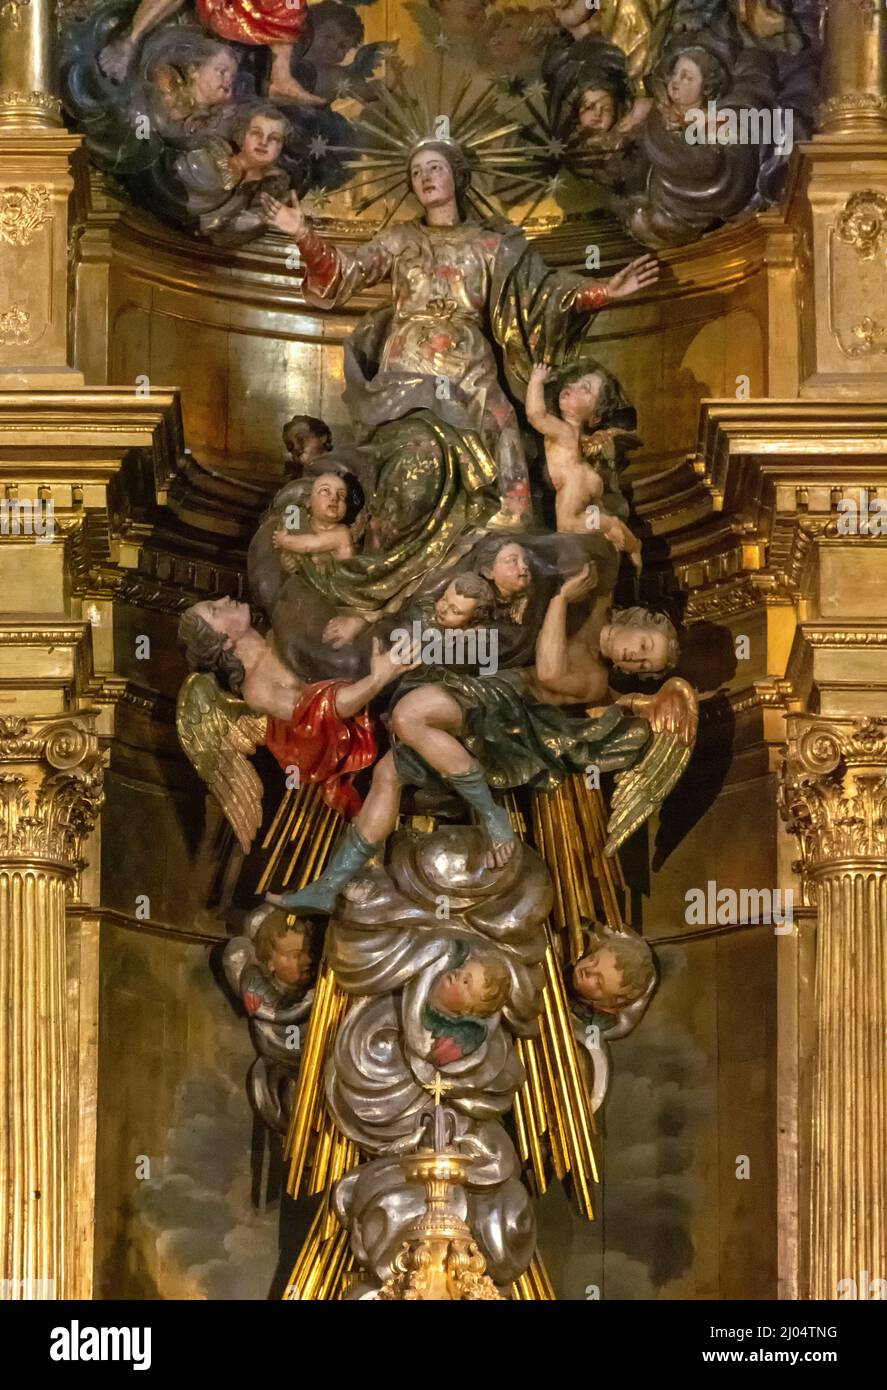 Detalles y retablo de la Capilla Mayor de la Catedral de Mondoñedo, Lugo, España Stock Photo